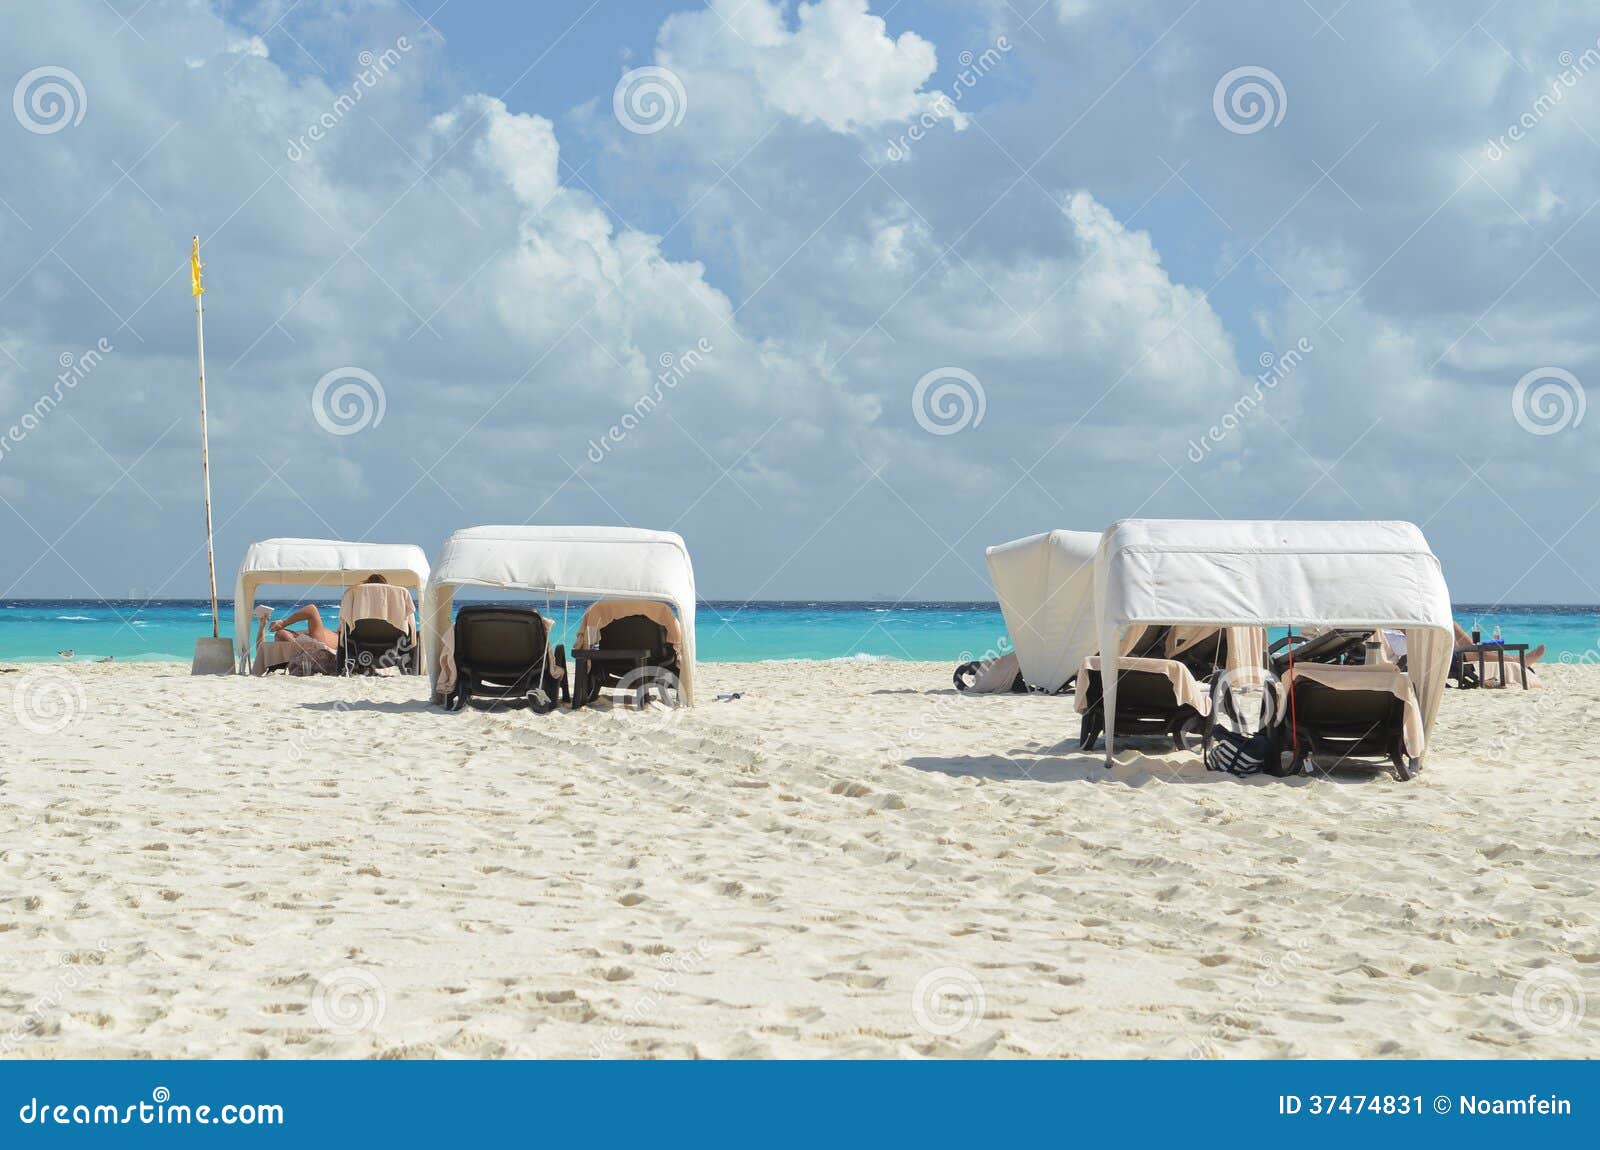 beach of playa del carmen